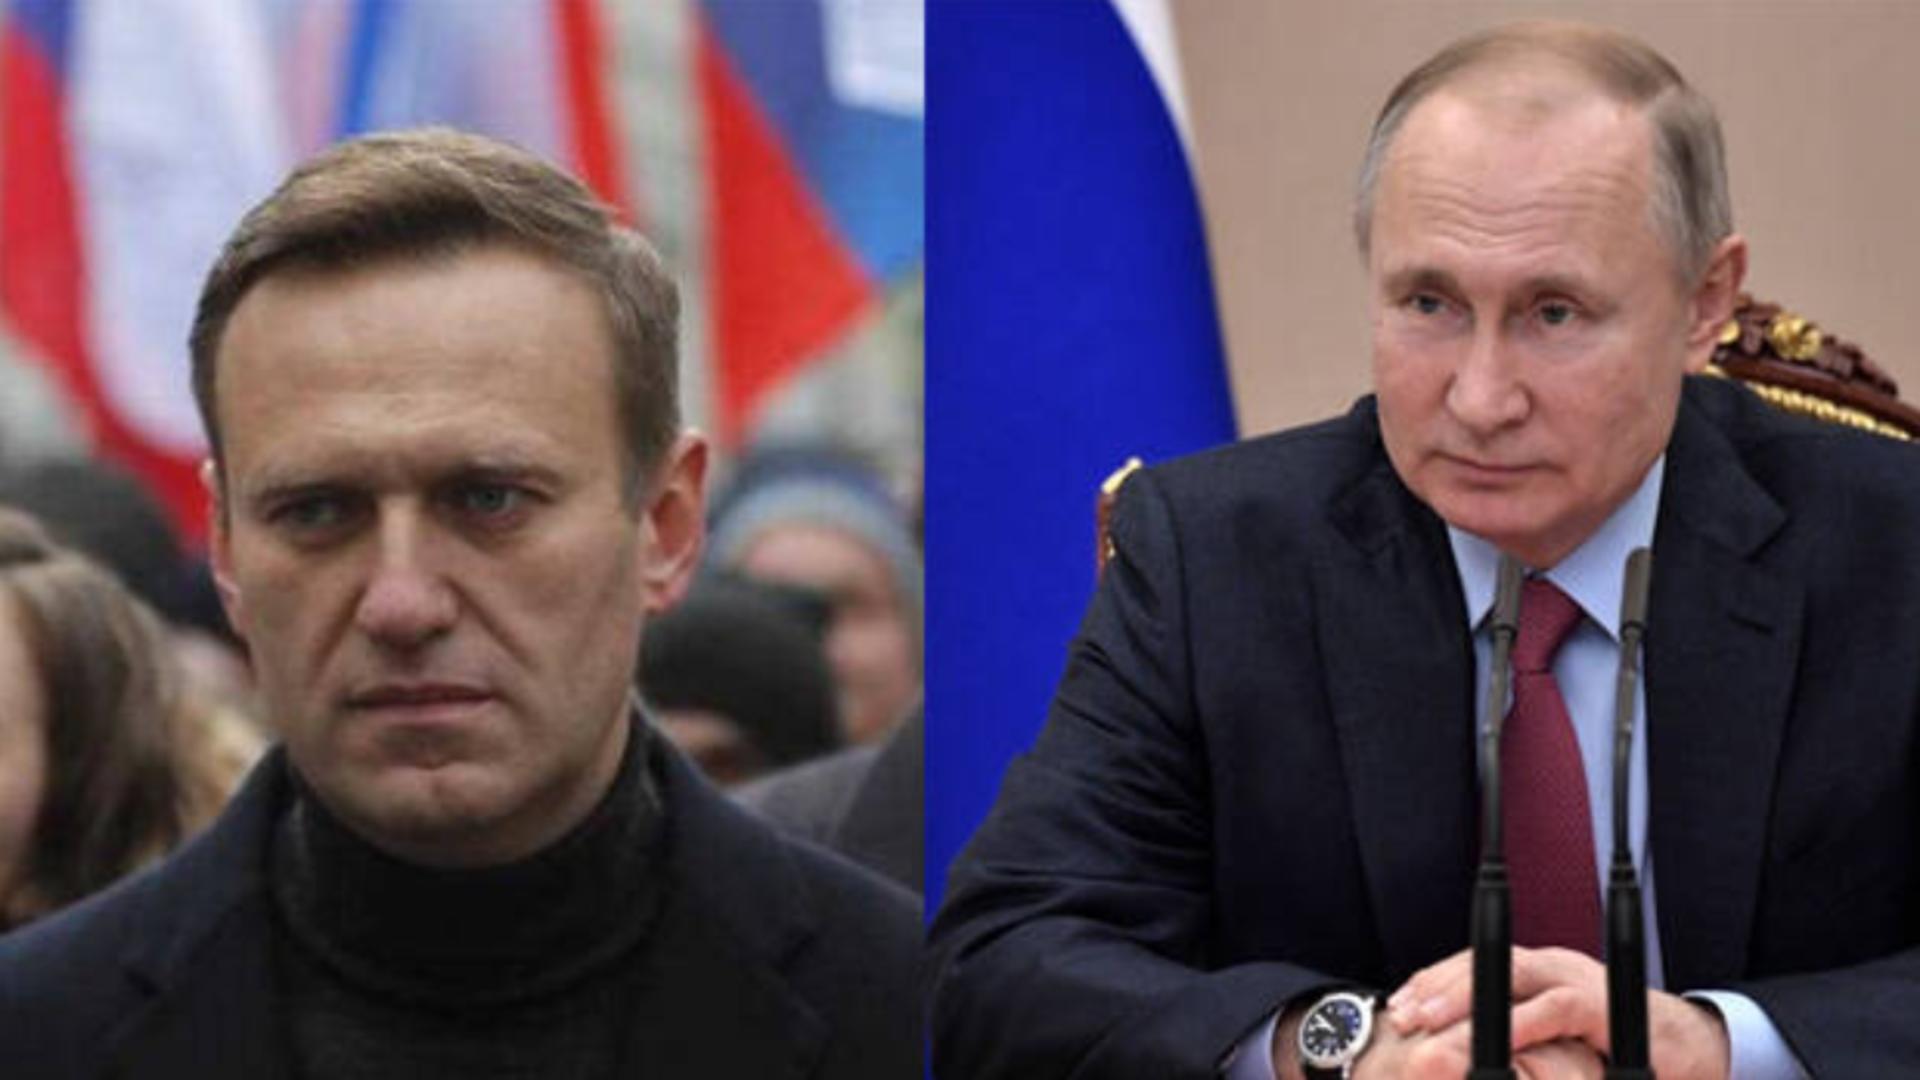 Șanse mari de eliberare pentru cel mai mare critic al lui Putin: Aleksei Navalnîi, dat la schimb pentru un asasin fidel Kremlinului